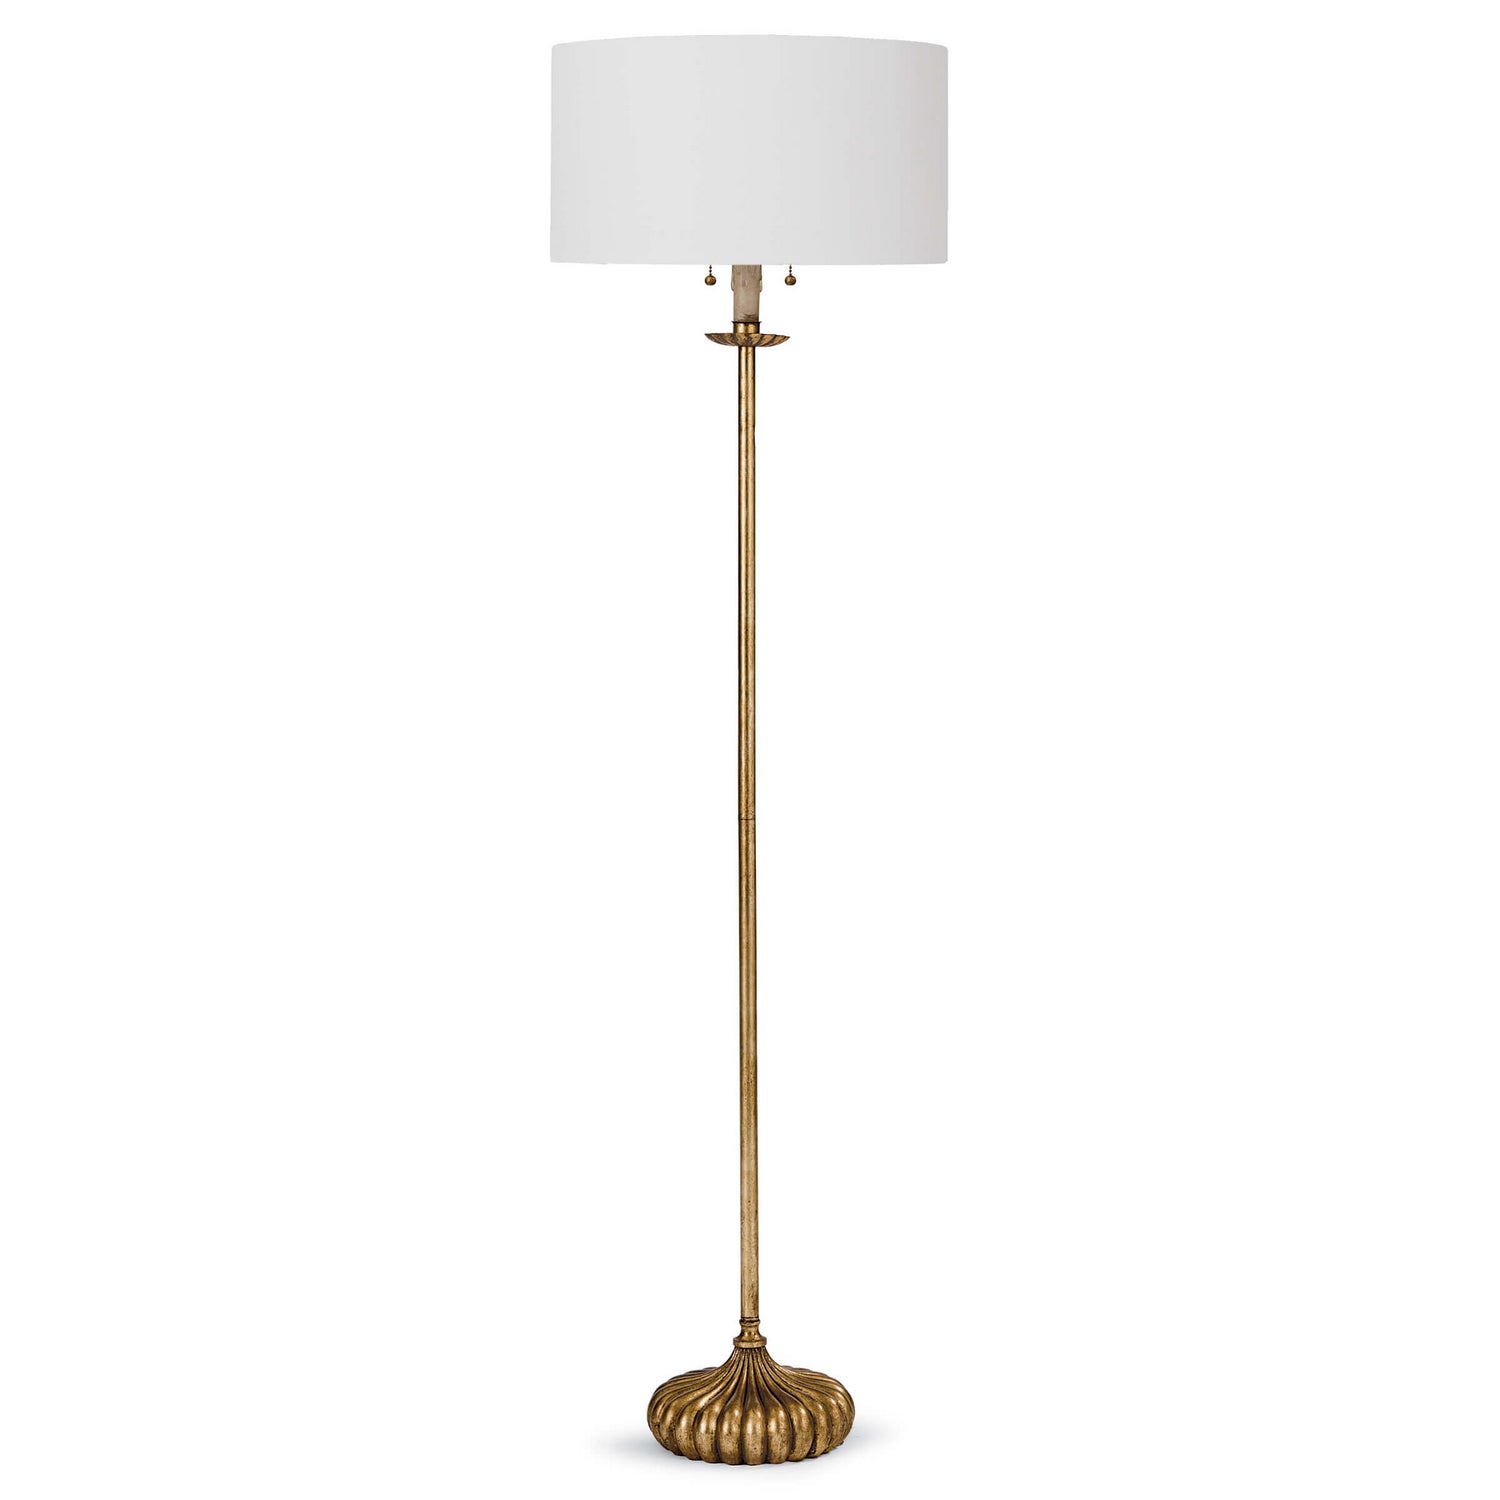 Regina Andrew - Two Light Floor Lamp - Clove - Antique Gold Leaf- Union Lighting Luminaires Decor